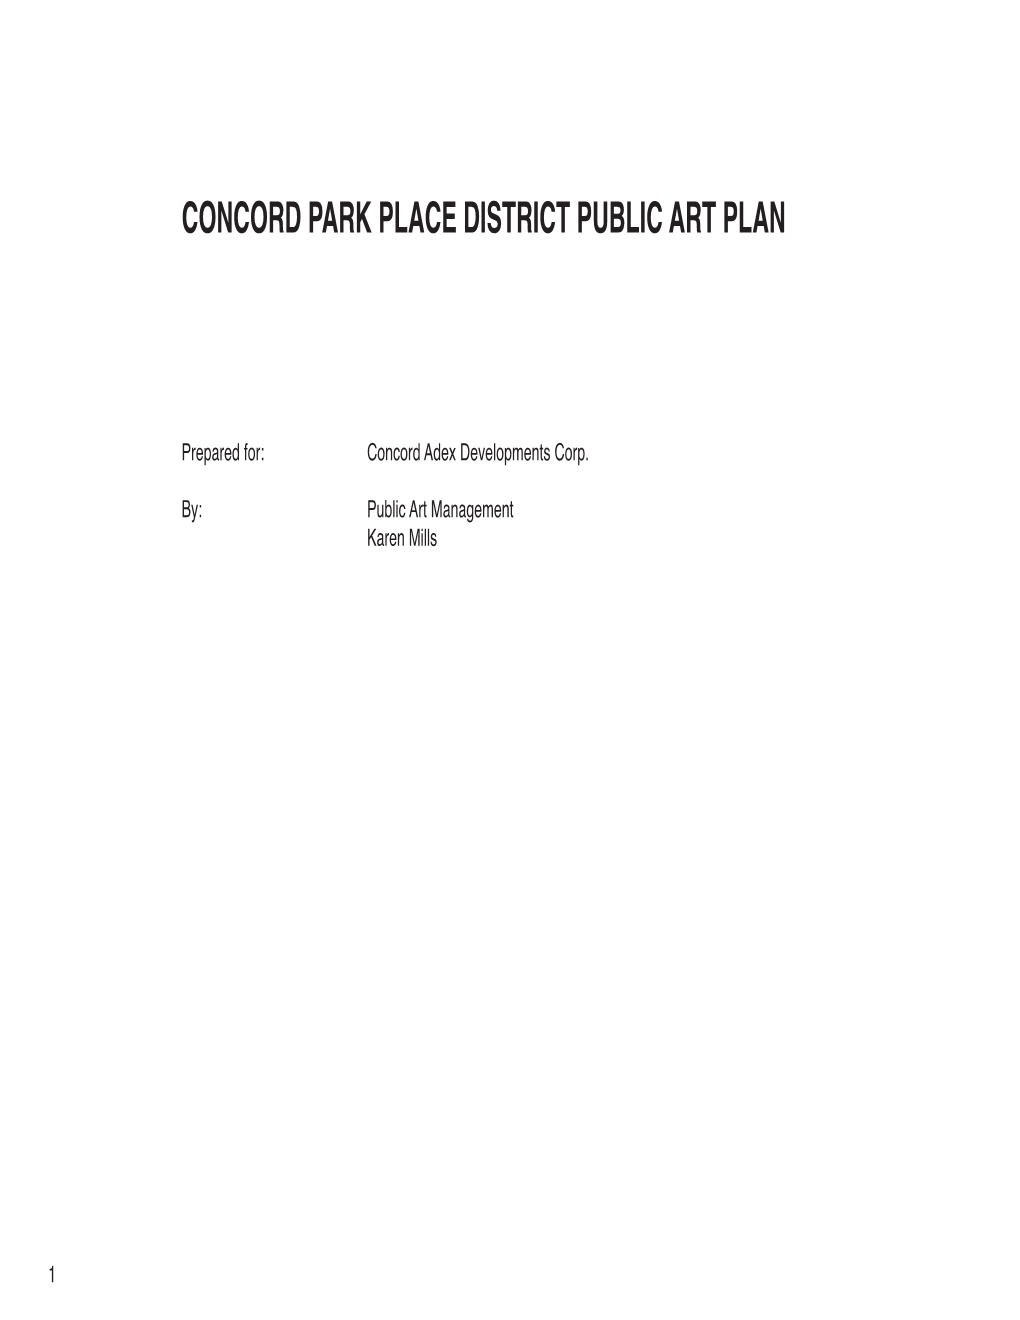 Concord Park Place District Public Art Plan